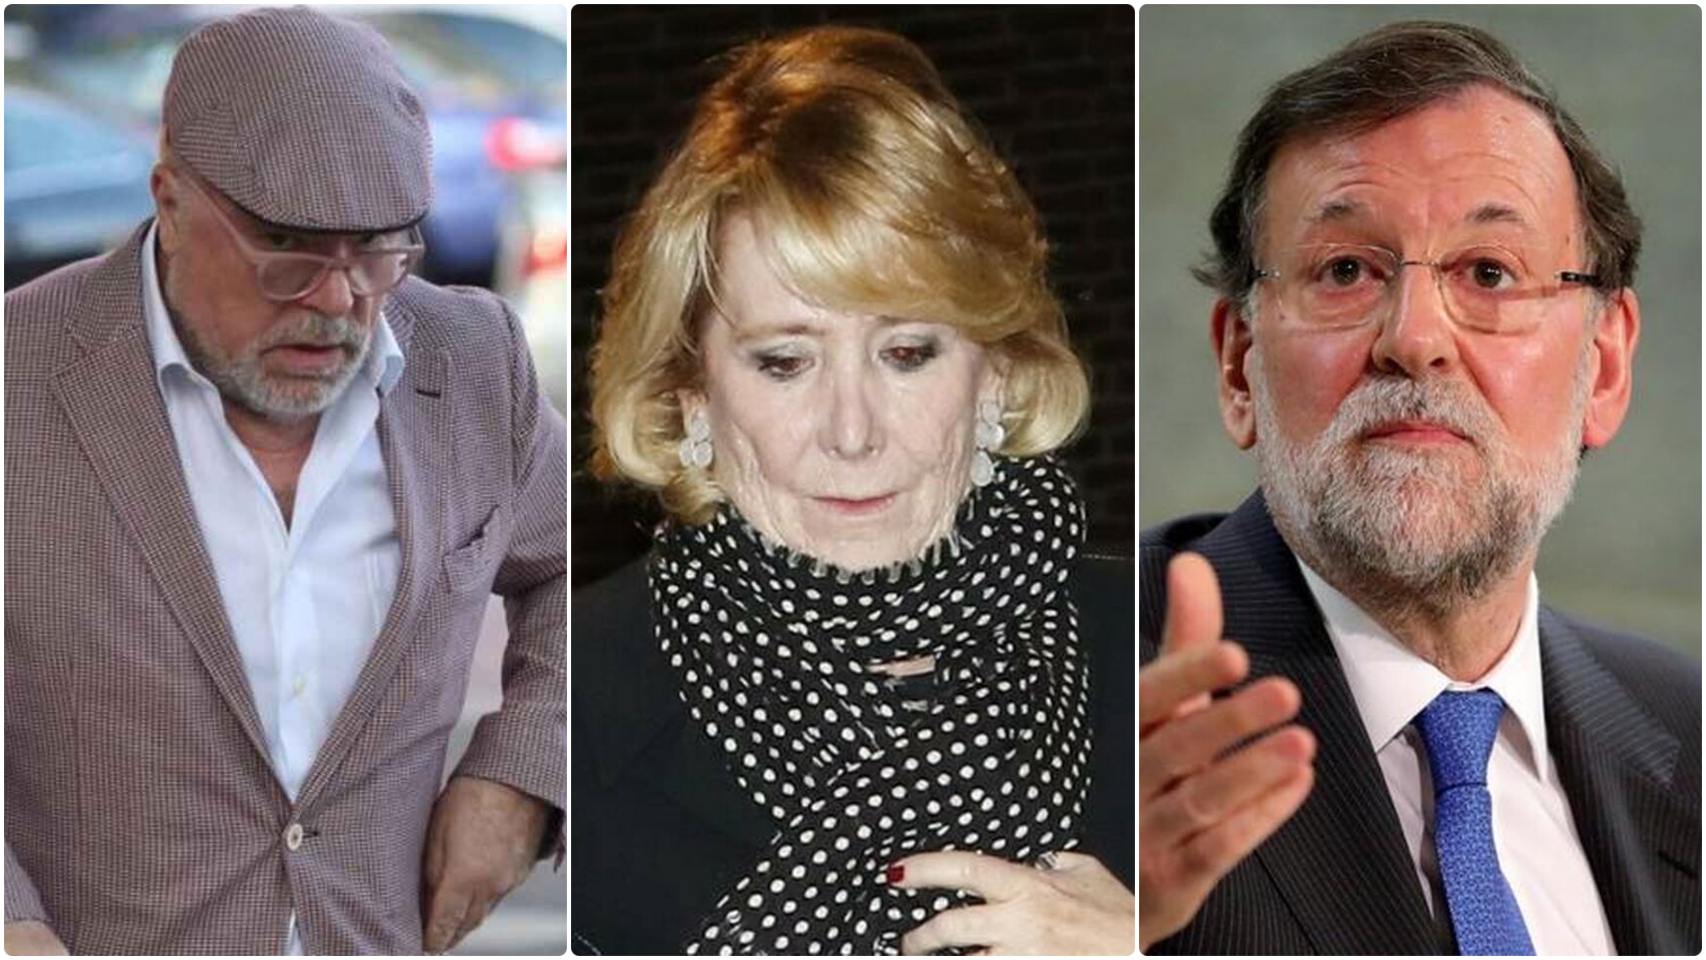 El comisario, Aguirre y Mariano Rajoy, de nuevo involucrados en las grabaciones.